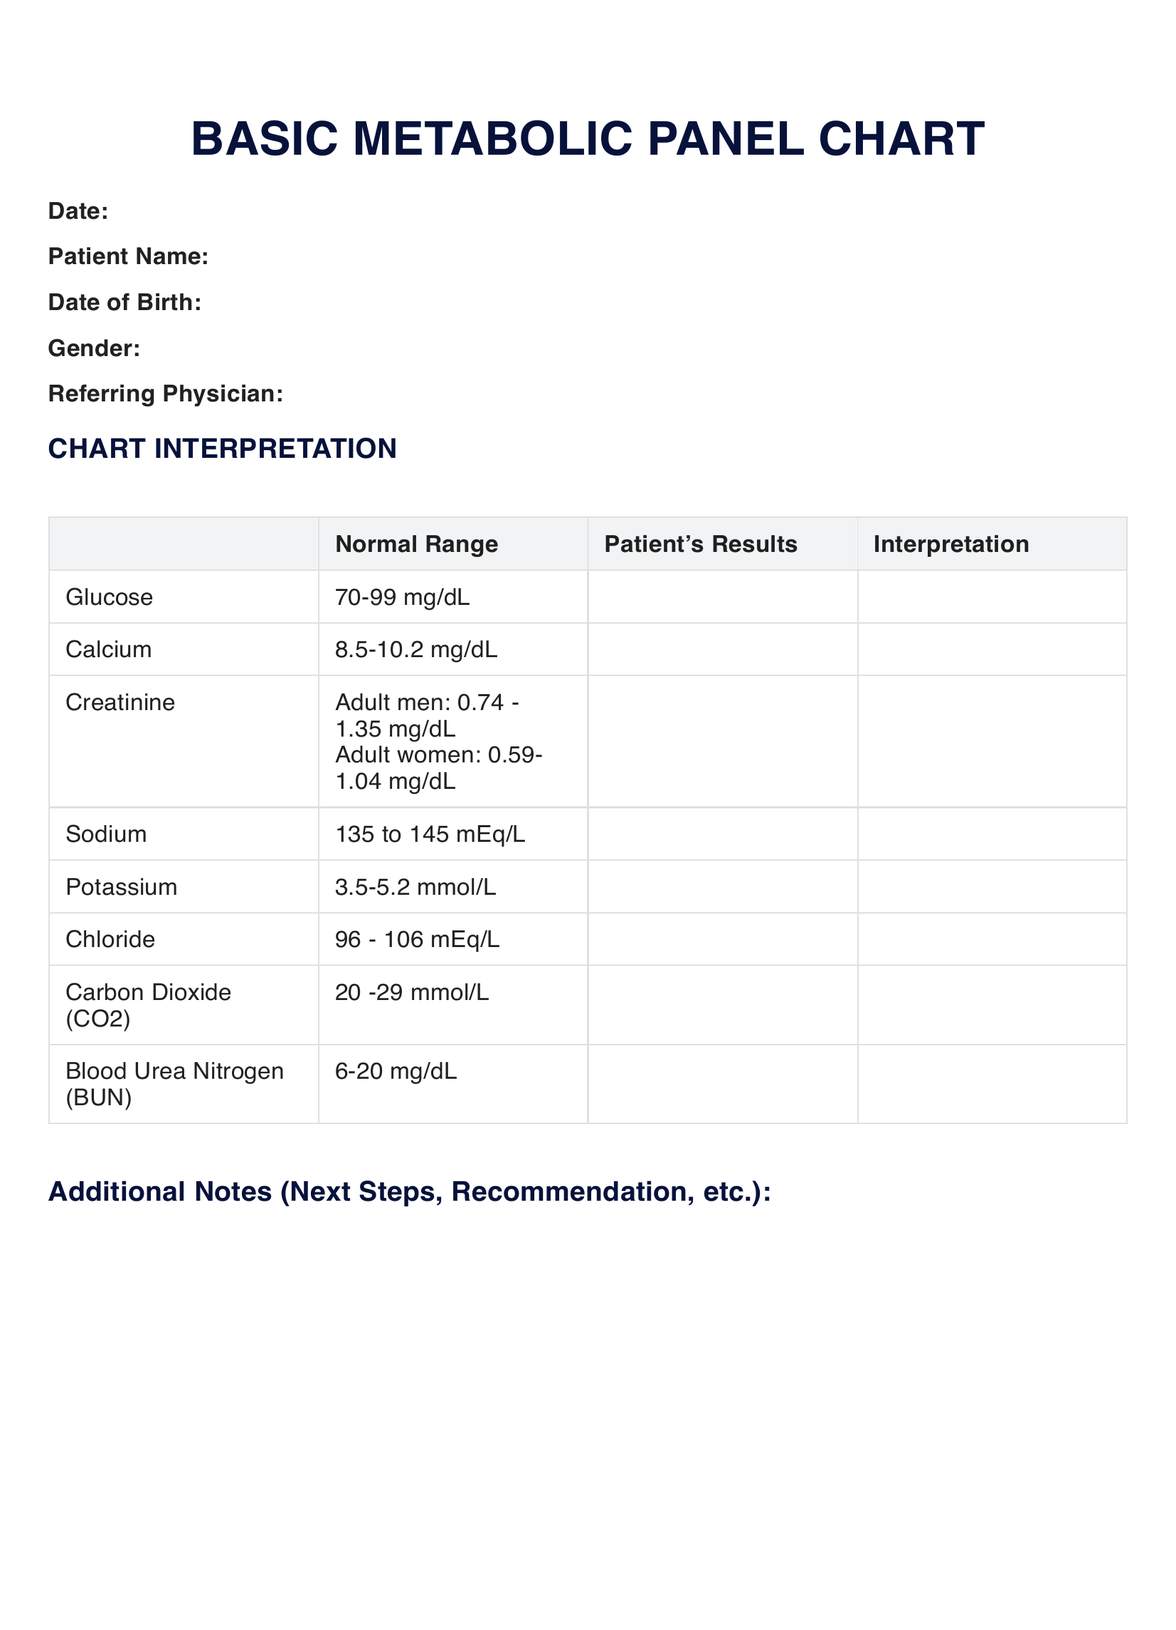 Basic Metabolic Panel Chart PDF Example